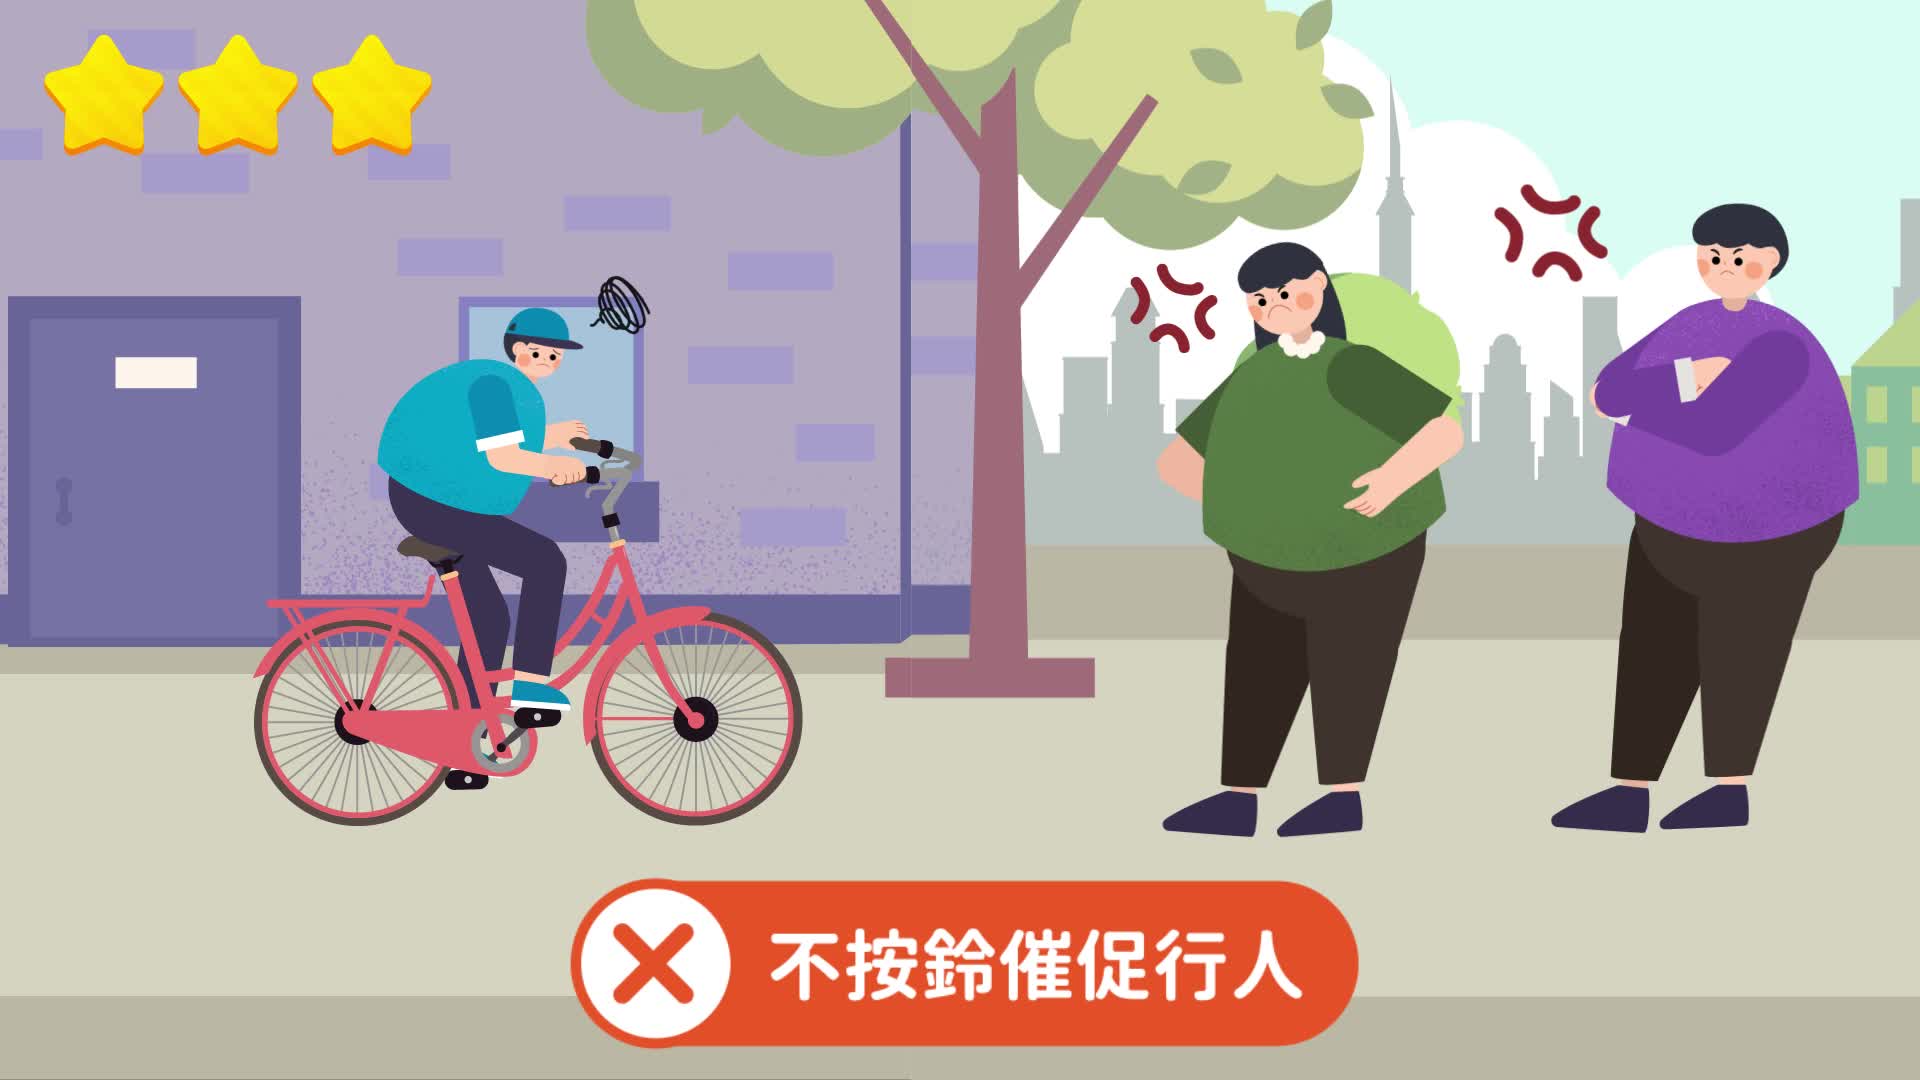 自行車請禮讓行人、不按鈴催促。